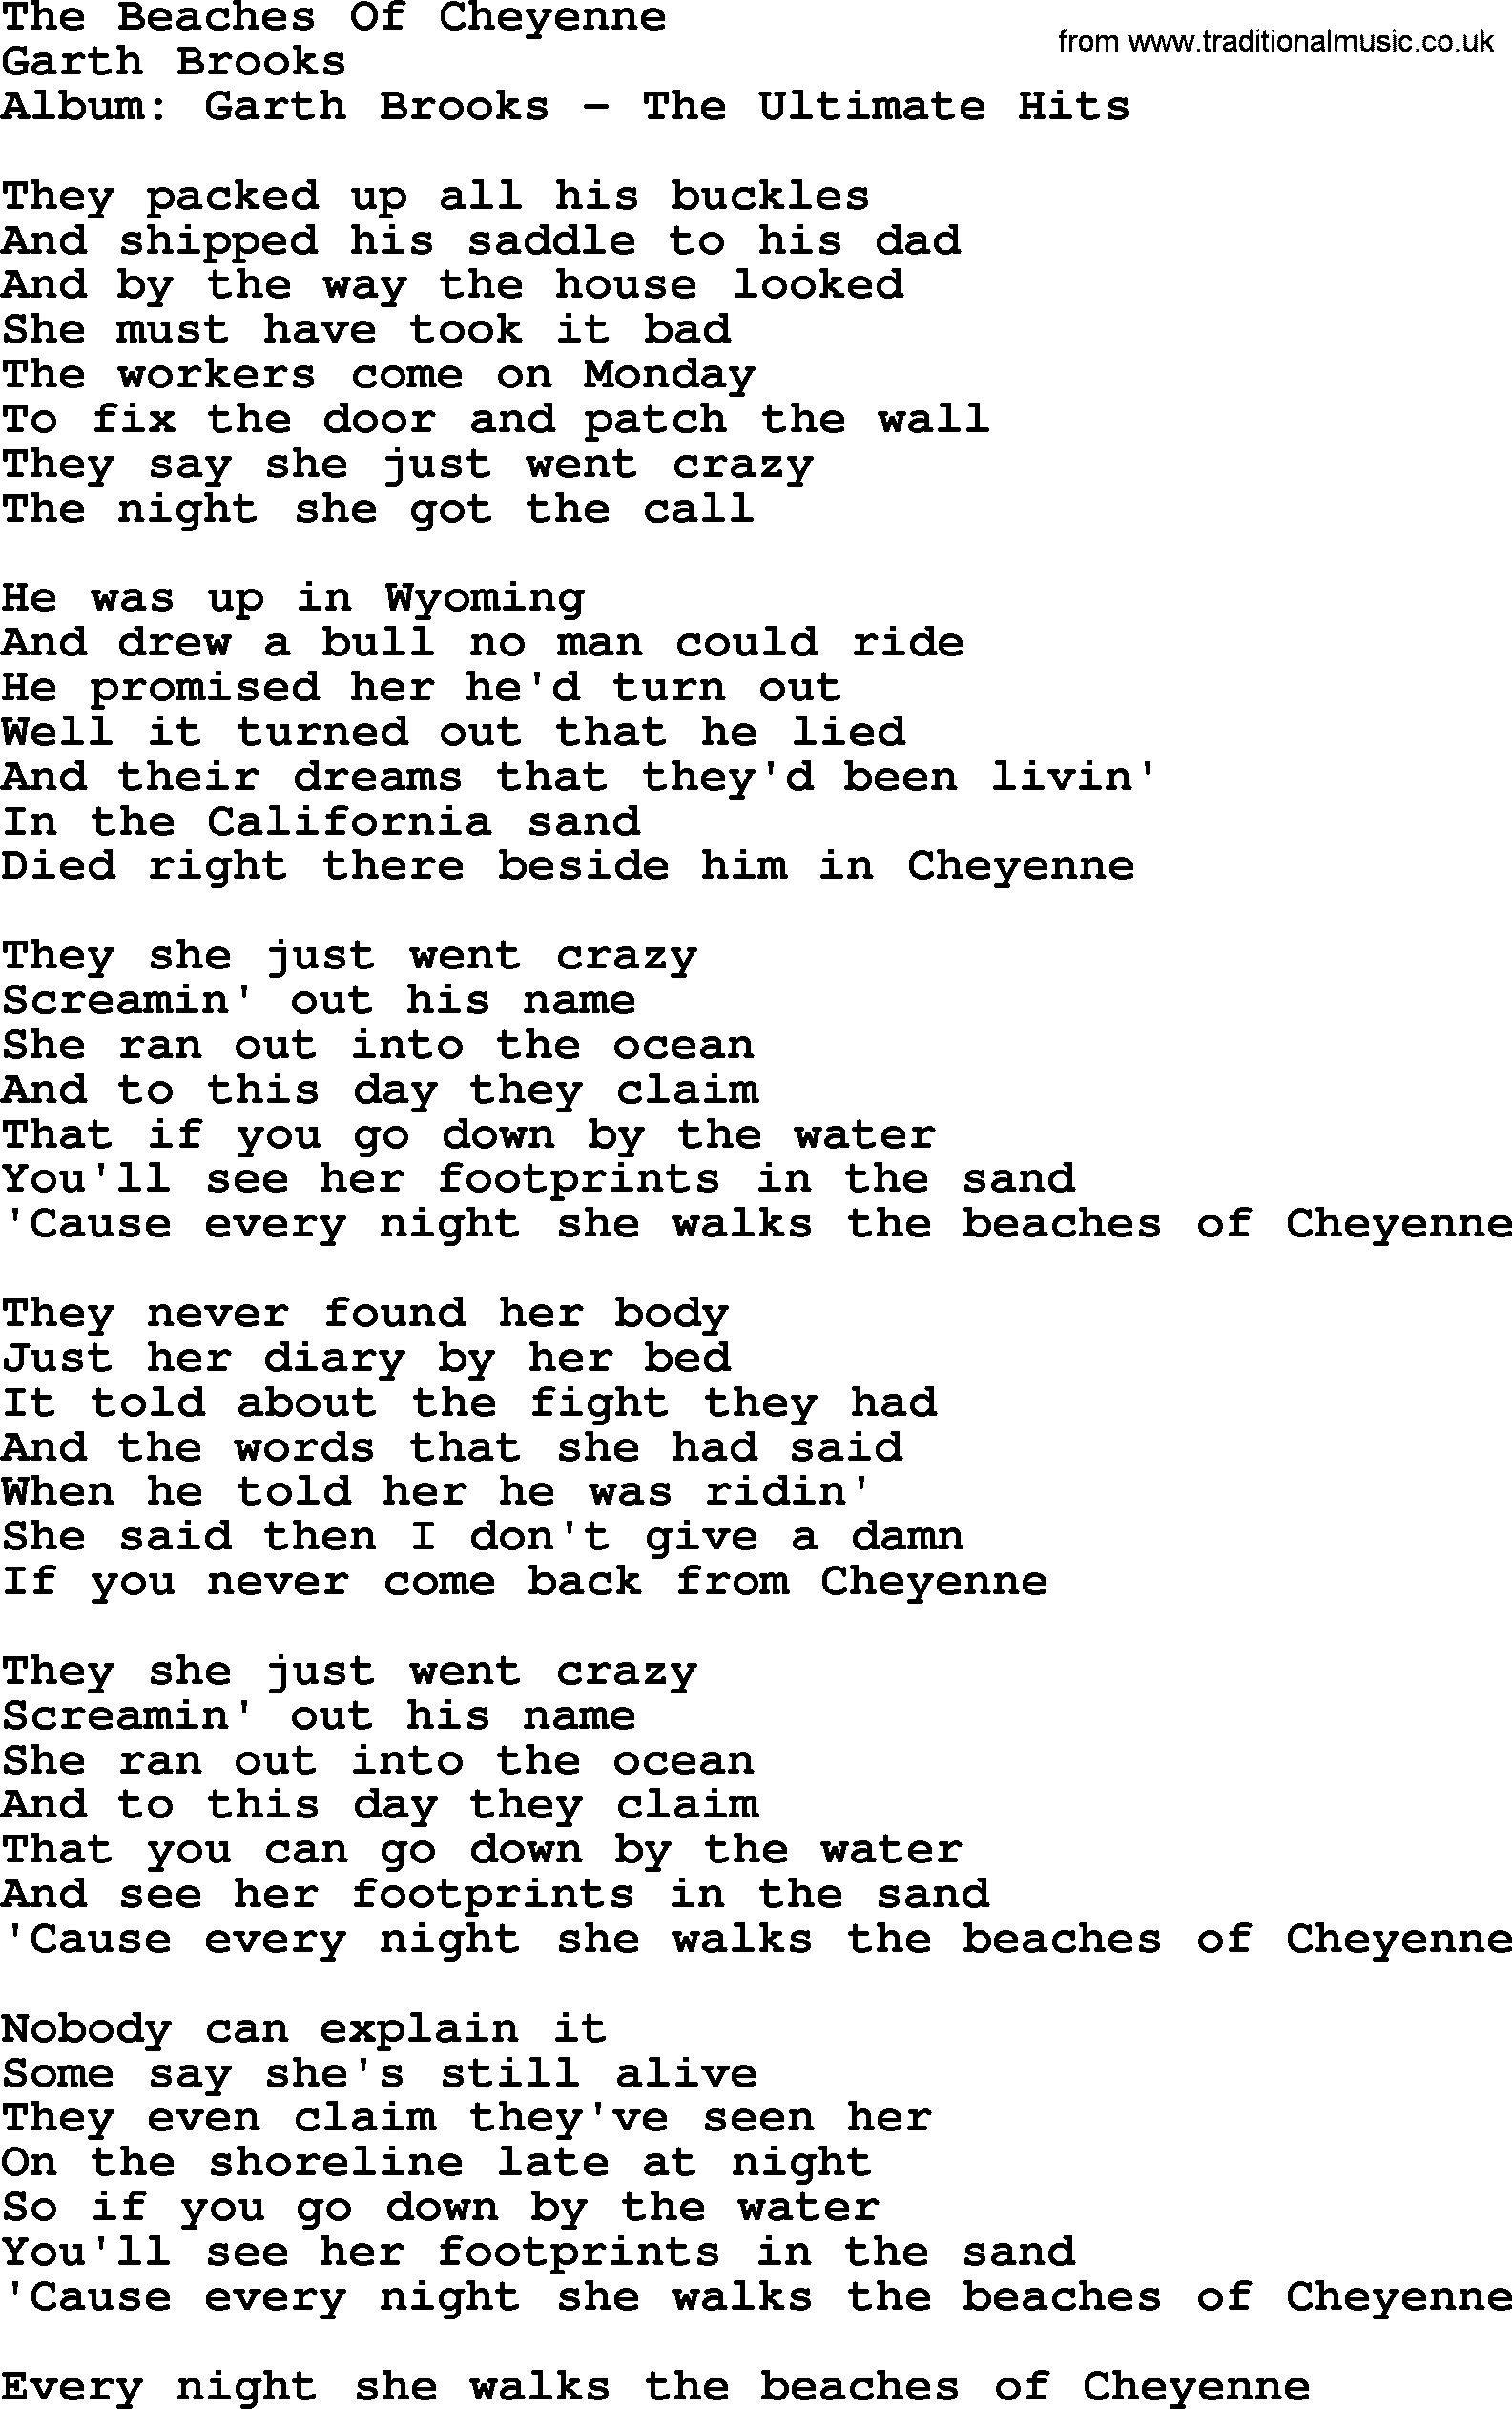 Garth Brooks song: The Beaches Of Cheyenne, lyrics